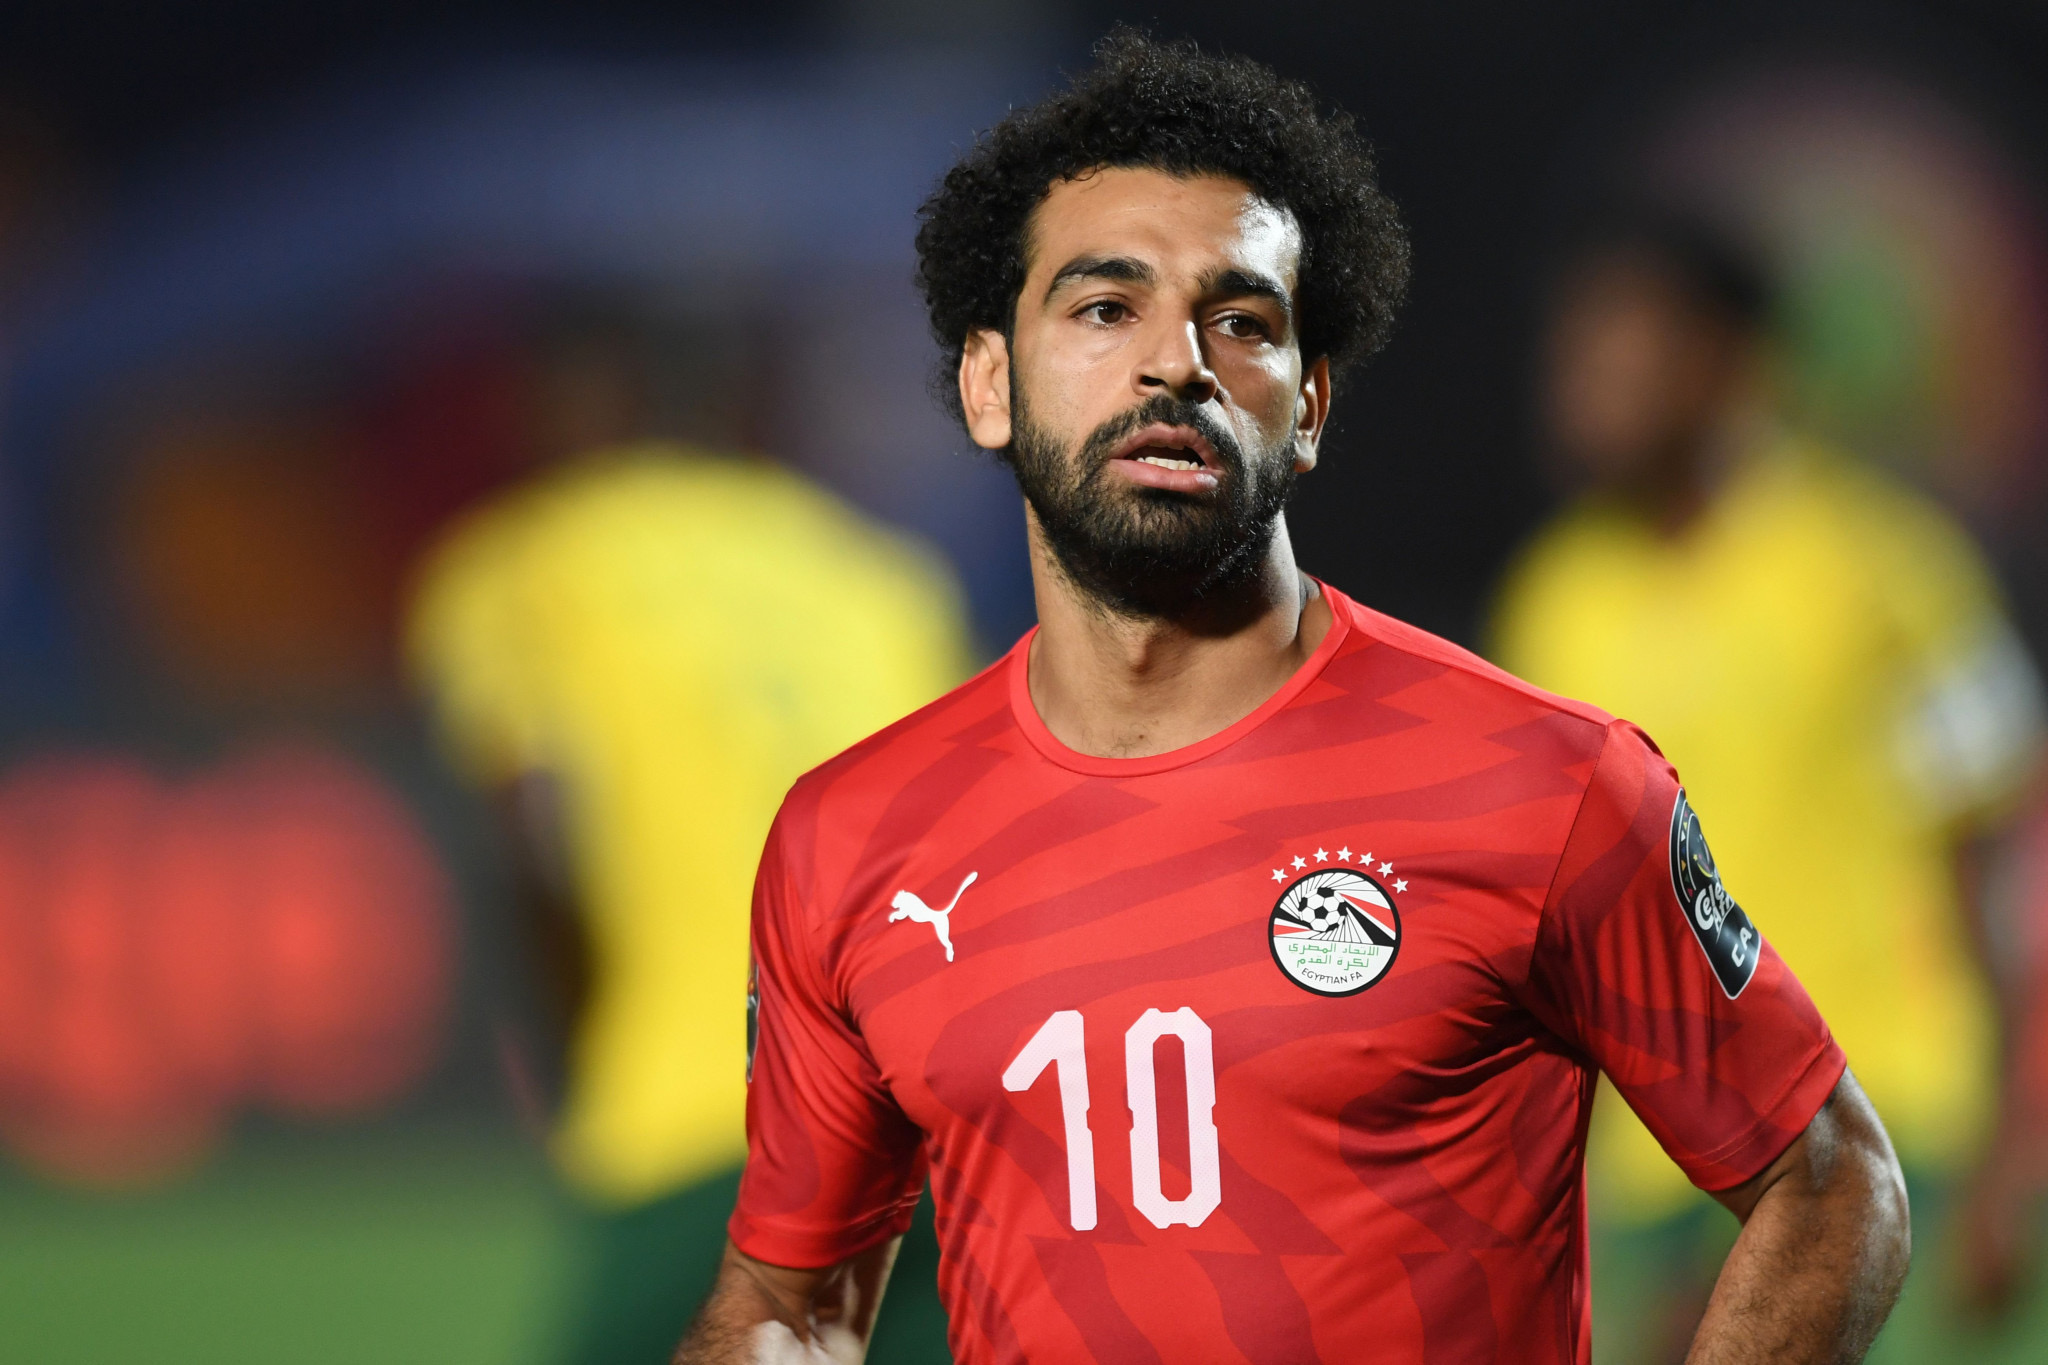 Liverpool Striker, Mohamed Salah Confirmed As New Captain Of Egyptian National Team